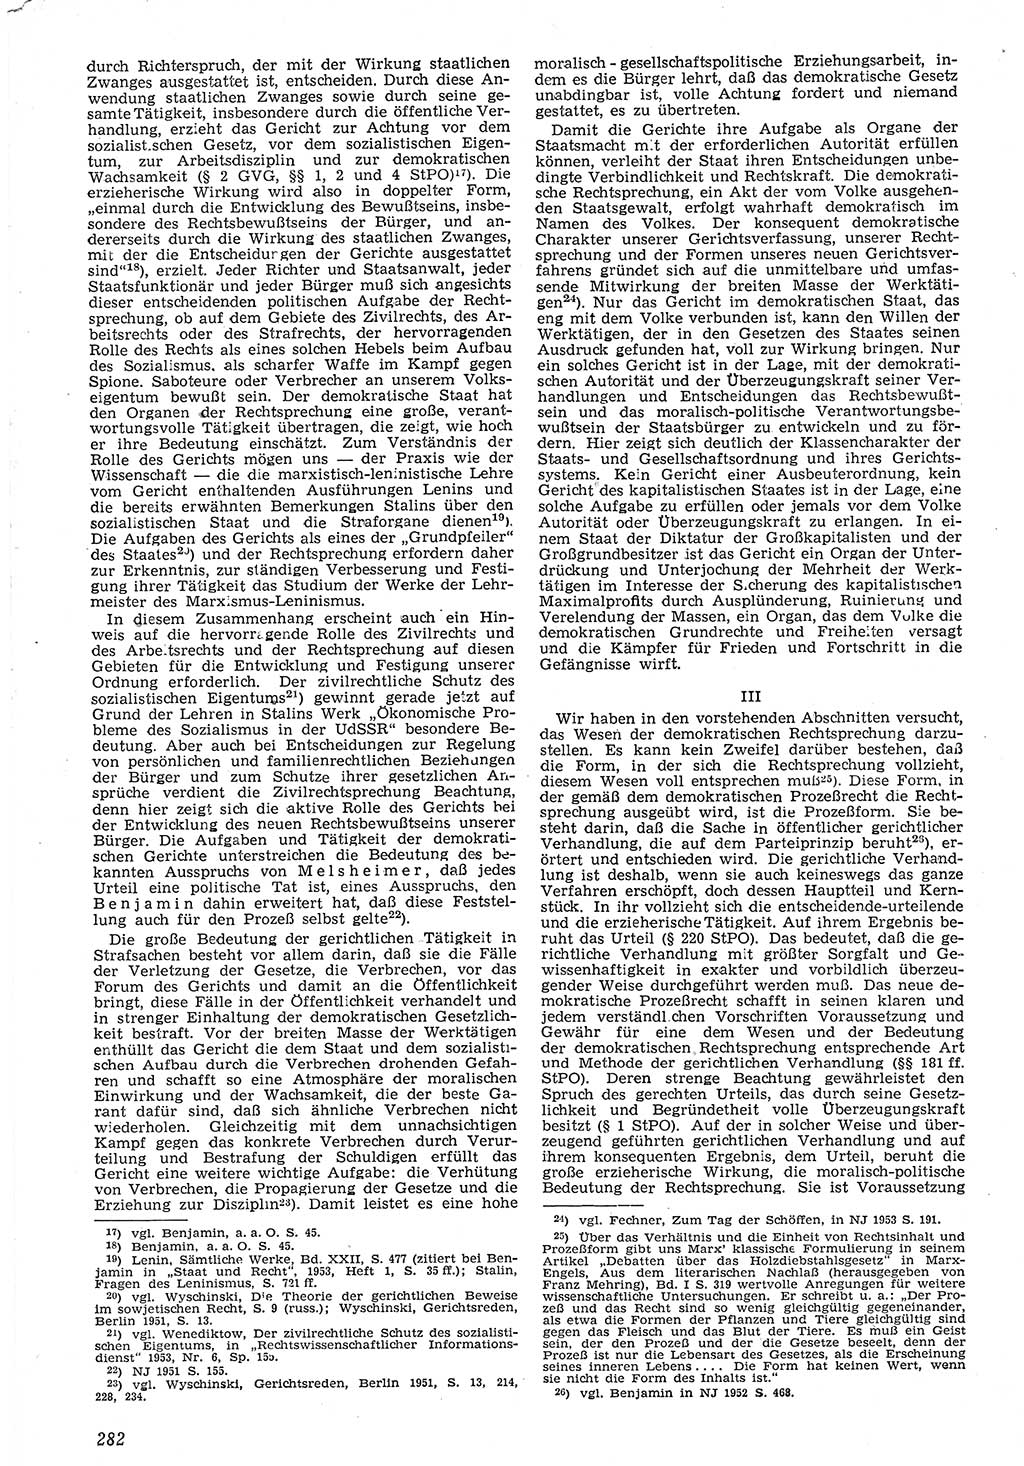 Neue Justiz (NJ), Zeitschrift für Recht und Rechtswissenschaft [Deutsche Demokratische Republik (DDR)], 7. Jahrgang 1953, Seite 282 (NJ DDR 1953, S. 282)